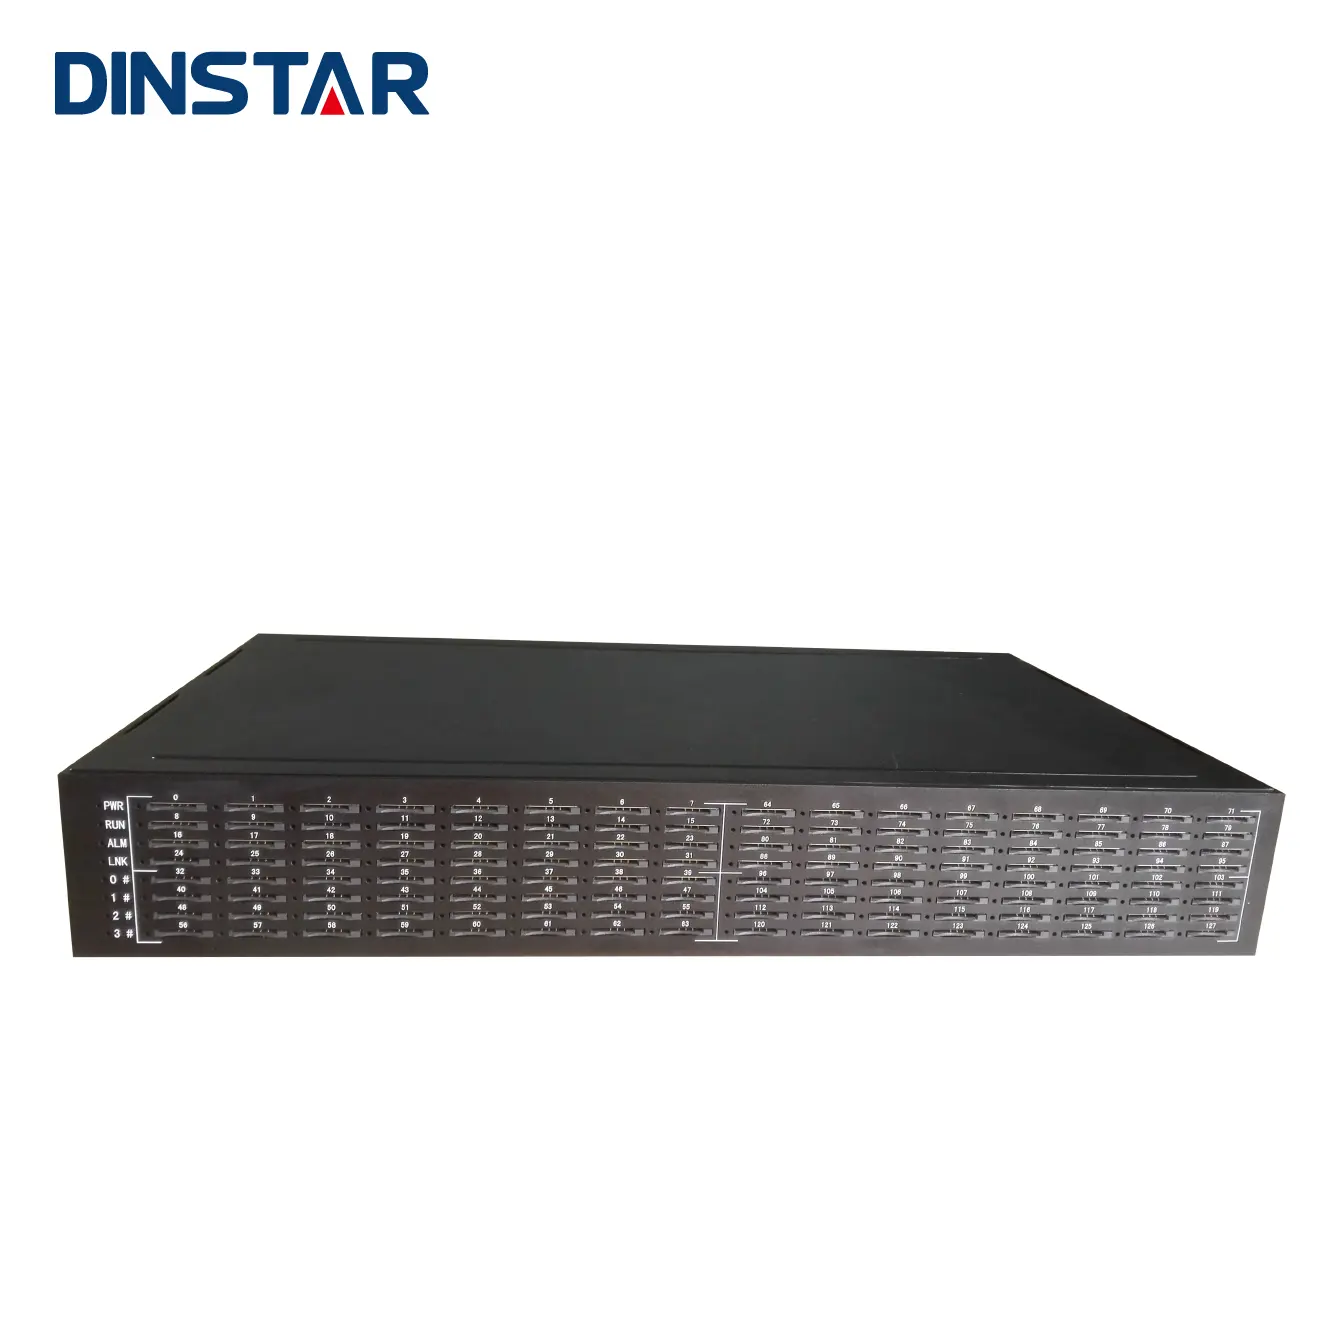 Dinstar Call Terminierung 128 Ports SIMBank SIM Cloud Server